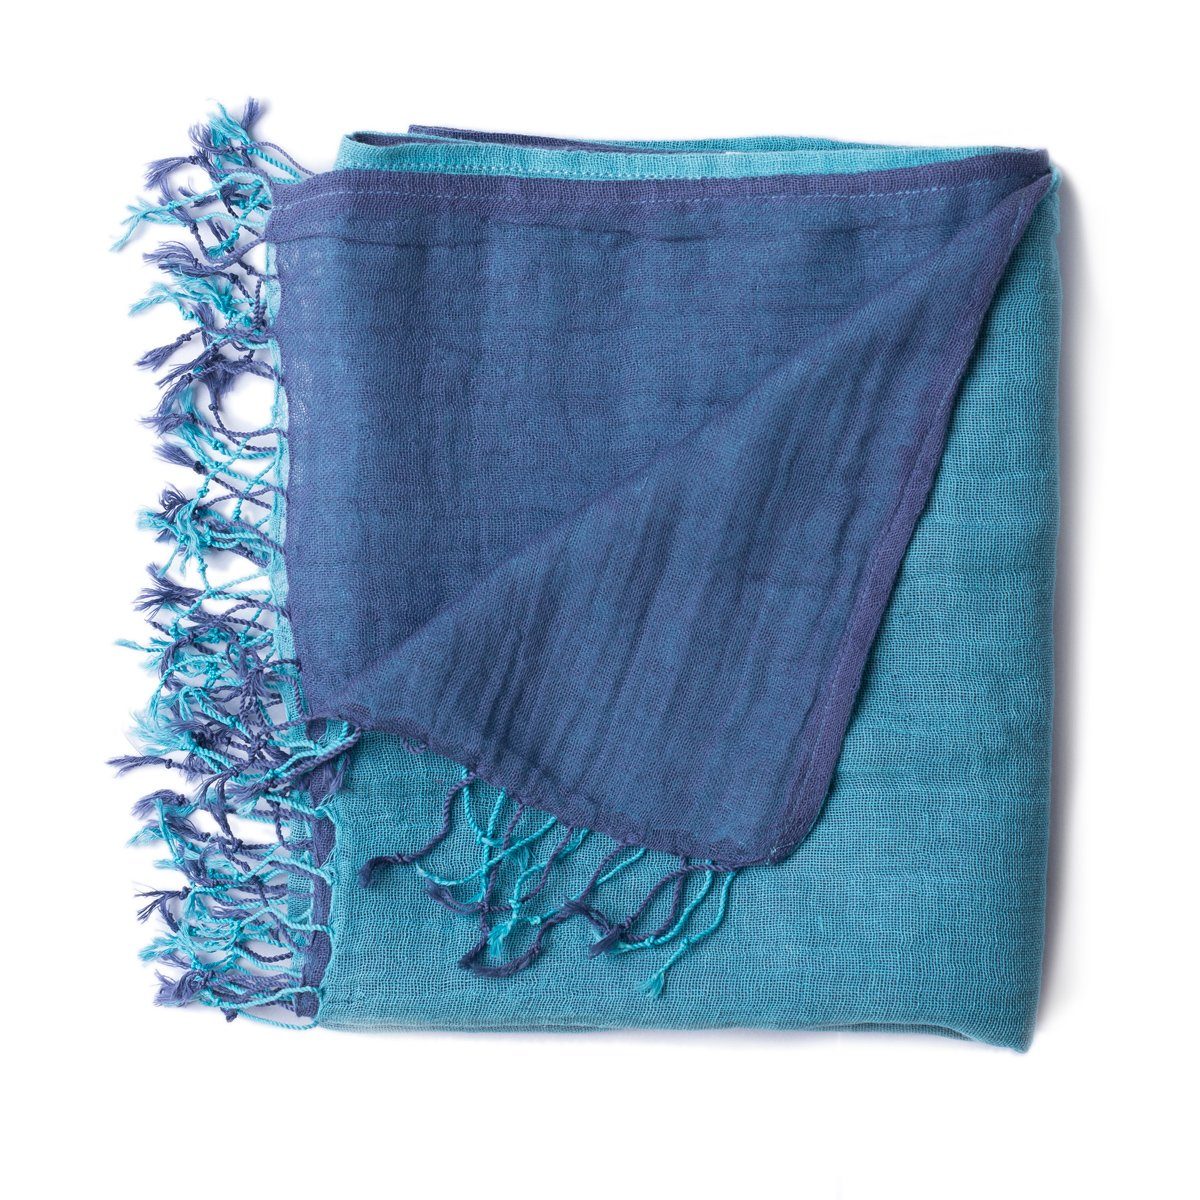 PANASIAM Halstuch elegantes Schultertuch in tragbar, Fransen Schal als zweifarbig kleinen auch mit blau farbigen Stola aus oder Baumwolle hellblau Designs schönen